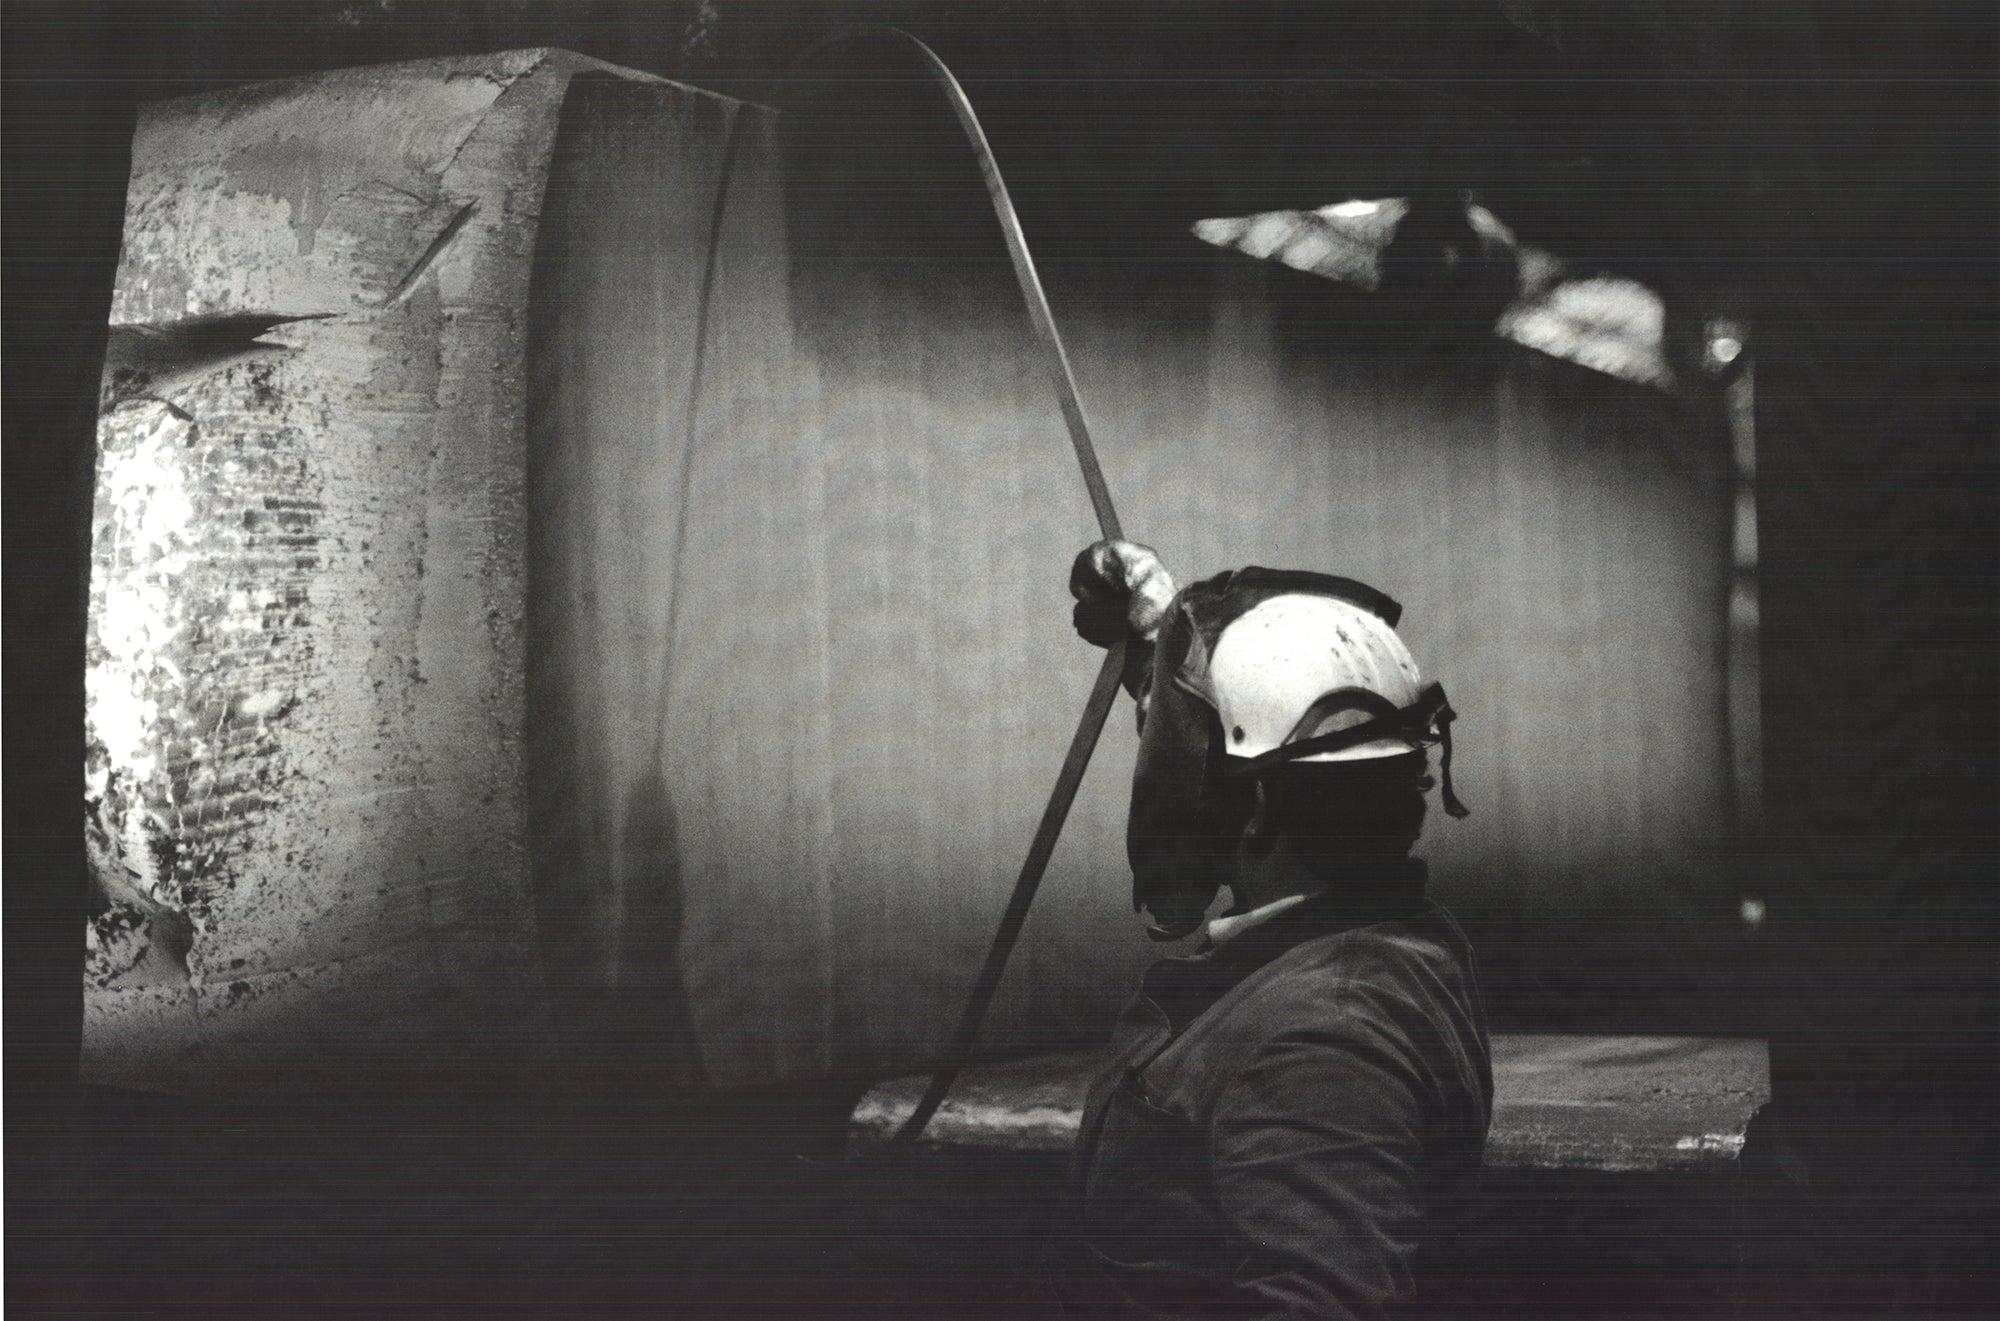 Lithographie Offset de Richard Serra « Rolled and Forged » (Roulé et forgé) 2006 - Signé 2